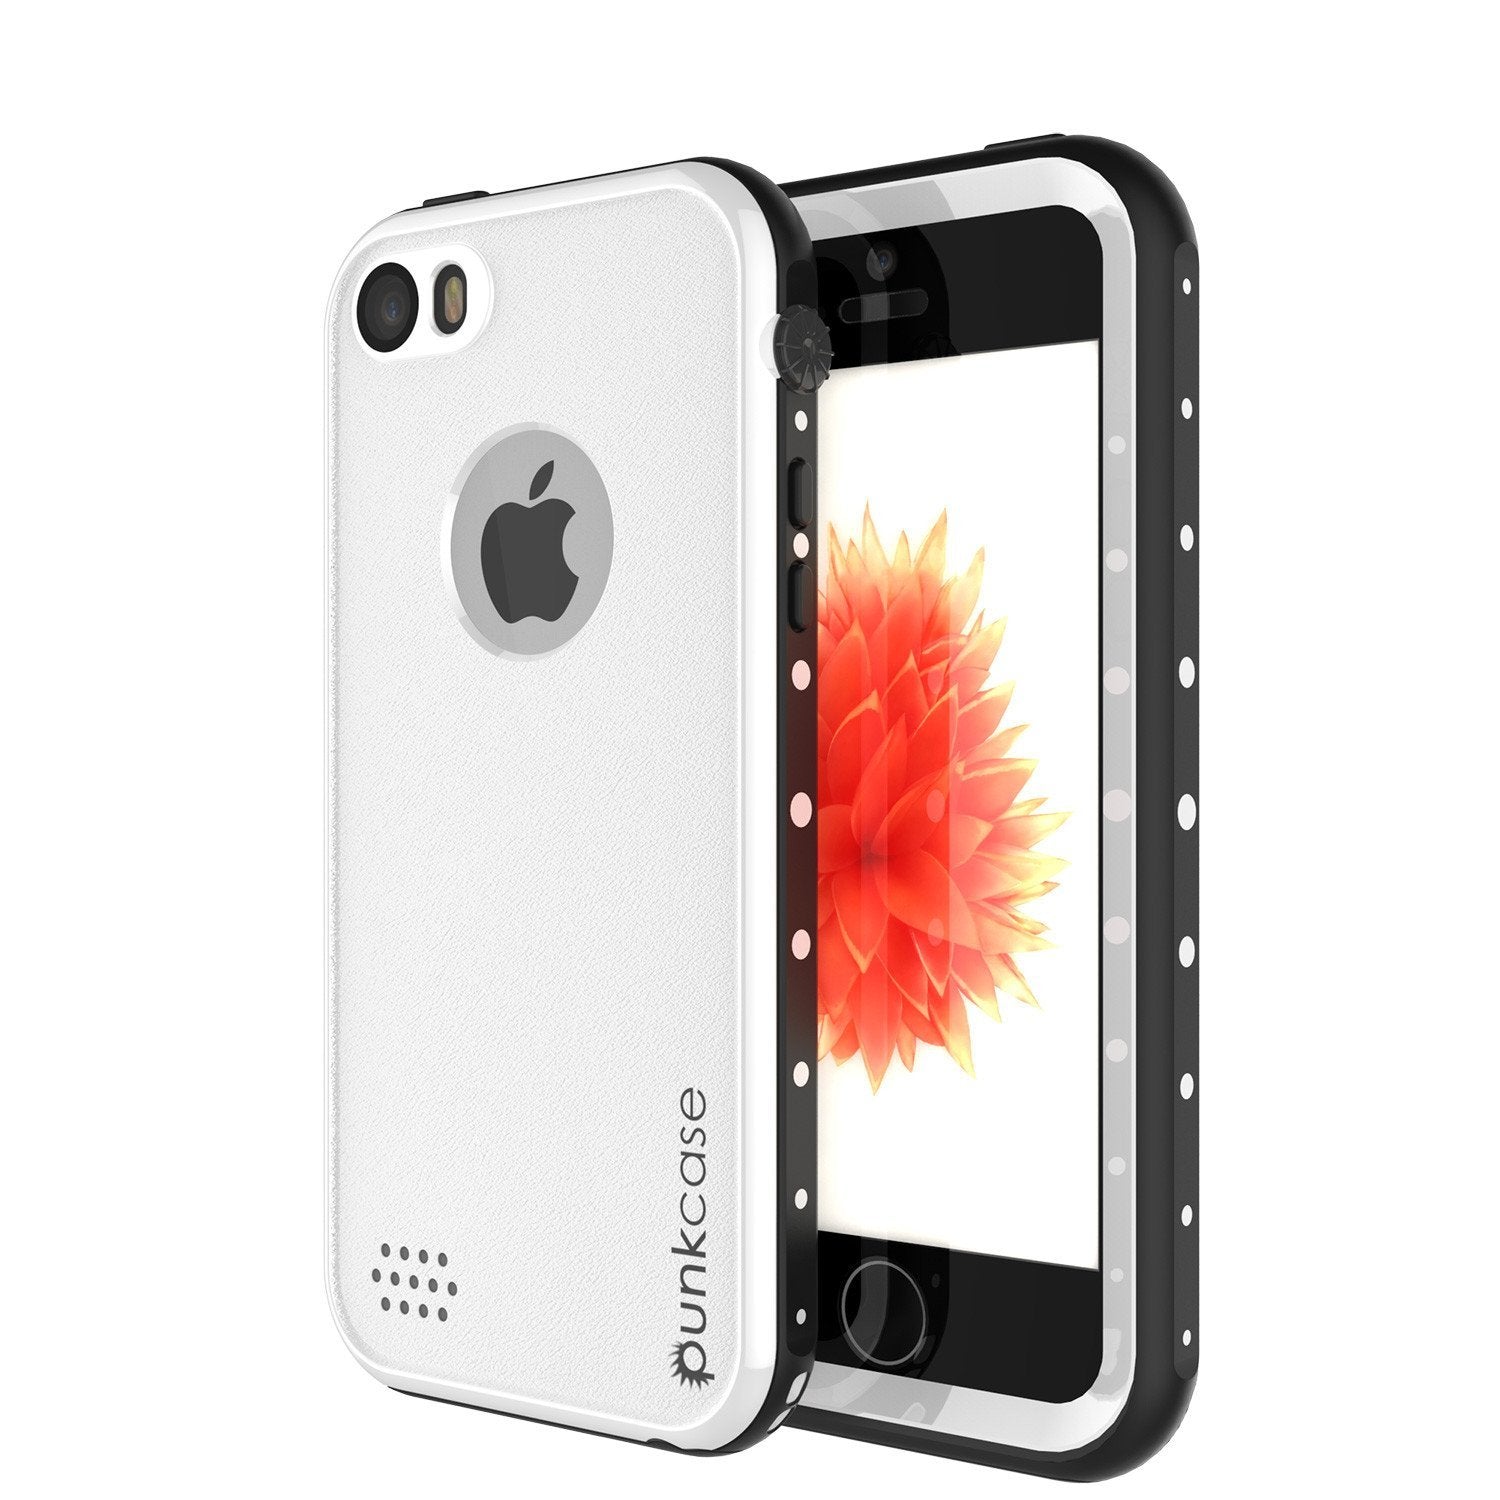 iPhone SE/5S/5 Waterproof Case, PunkCase StudStar White Shock/Dirt/Snow Proof | Lifetime Warranty